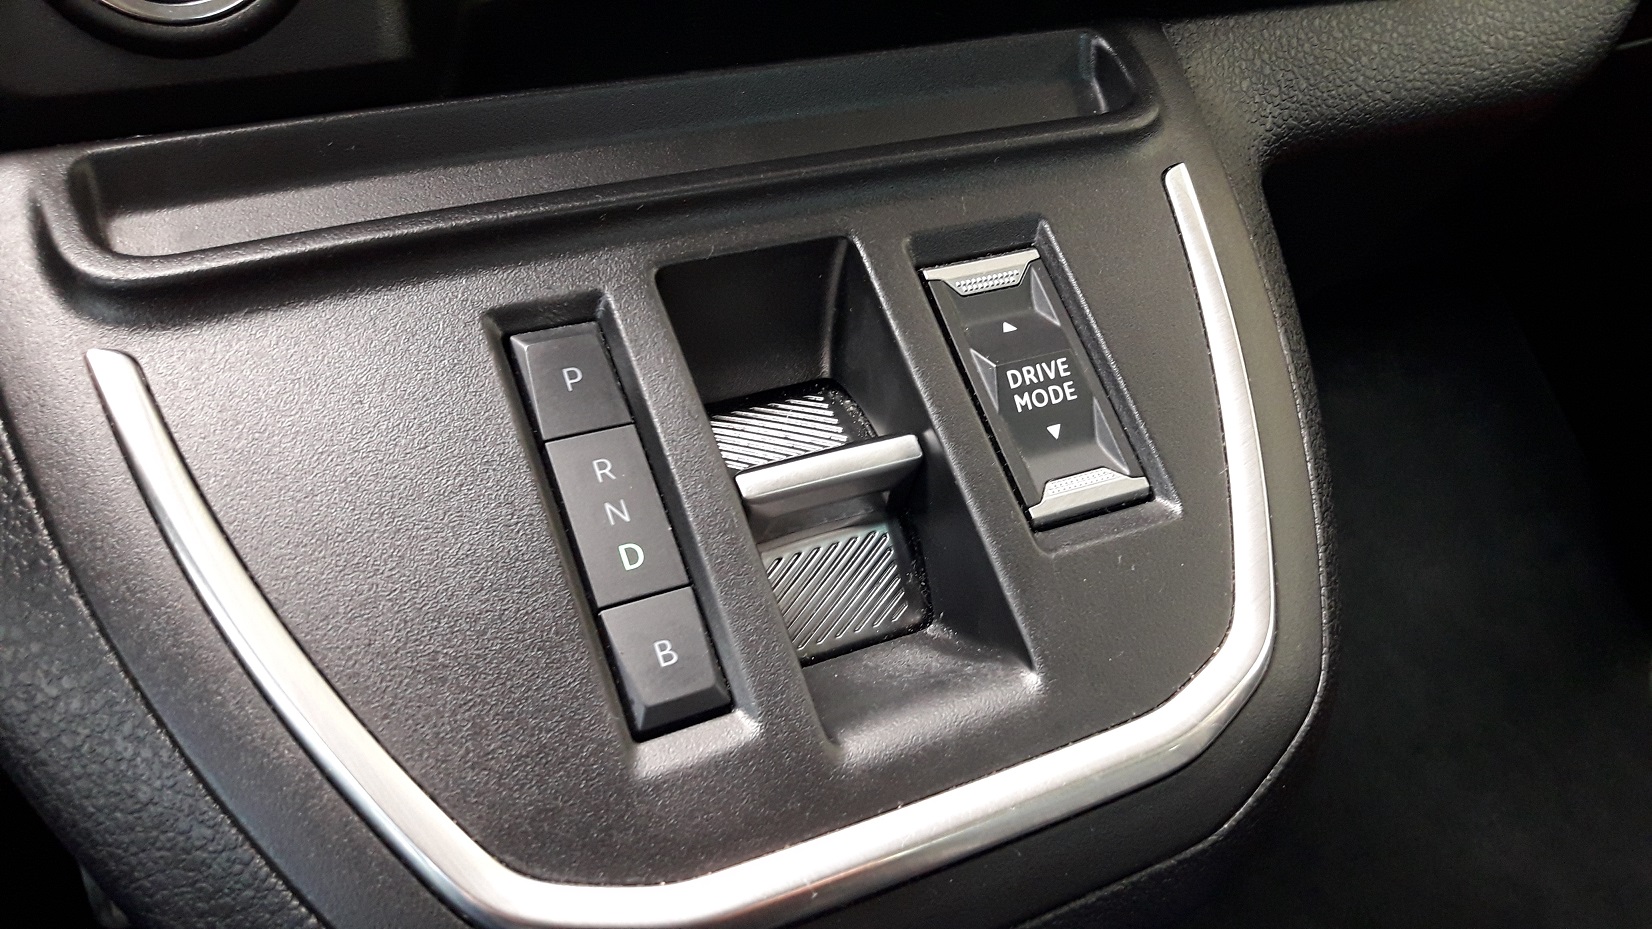 Volba jízdních režimů je prostřednictvím tlačítek a malého přepínače. Vpravo je přepínač jízdních módů. (foto: Vladimír Löbl)